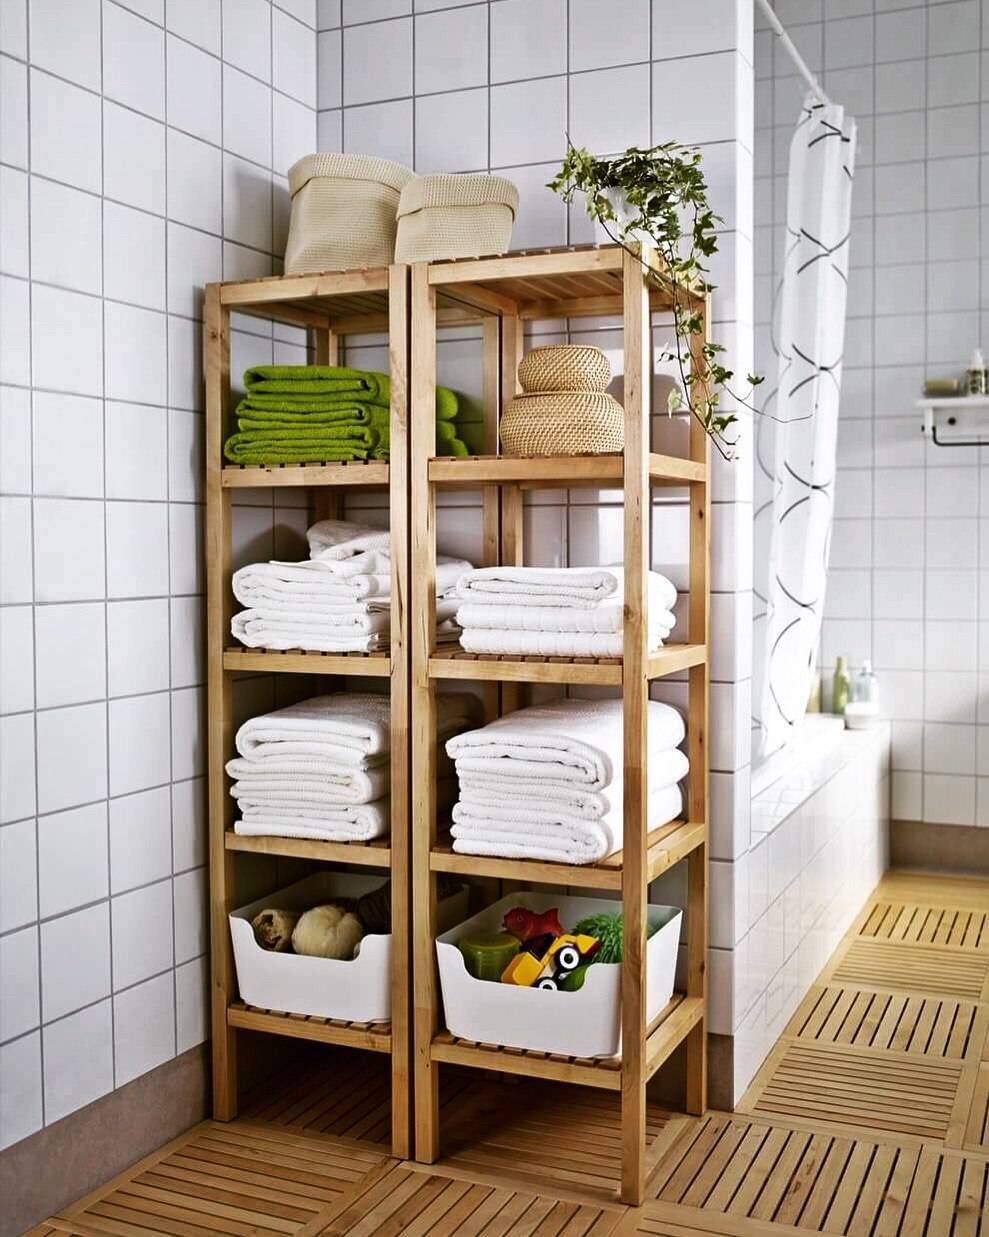 Хранение полотенец в ванной комнате. интересные идеи для стандартной ванной. что можно сделать своими руками? art-textil.ru